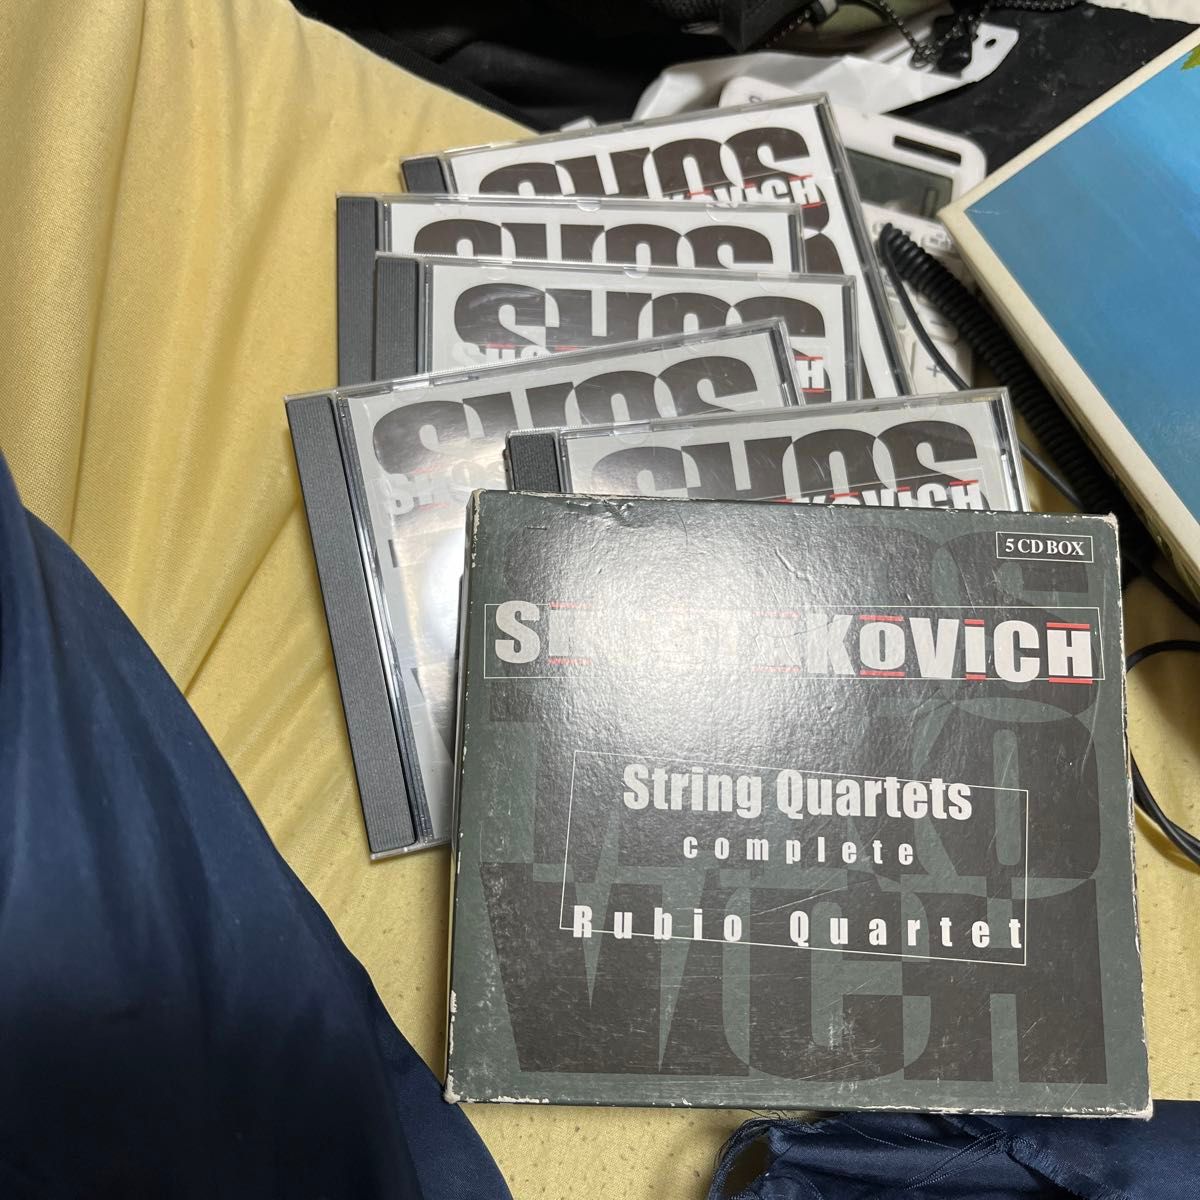 ショスタコーヴィッチ:弦楽四重奏曲全集5枚組みです。直輸入品なので日本語の解説はなし